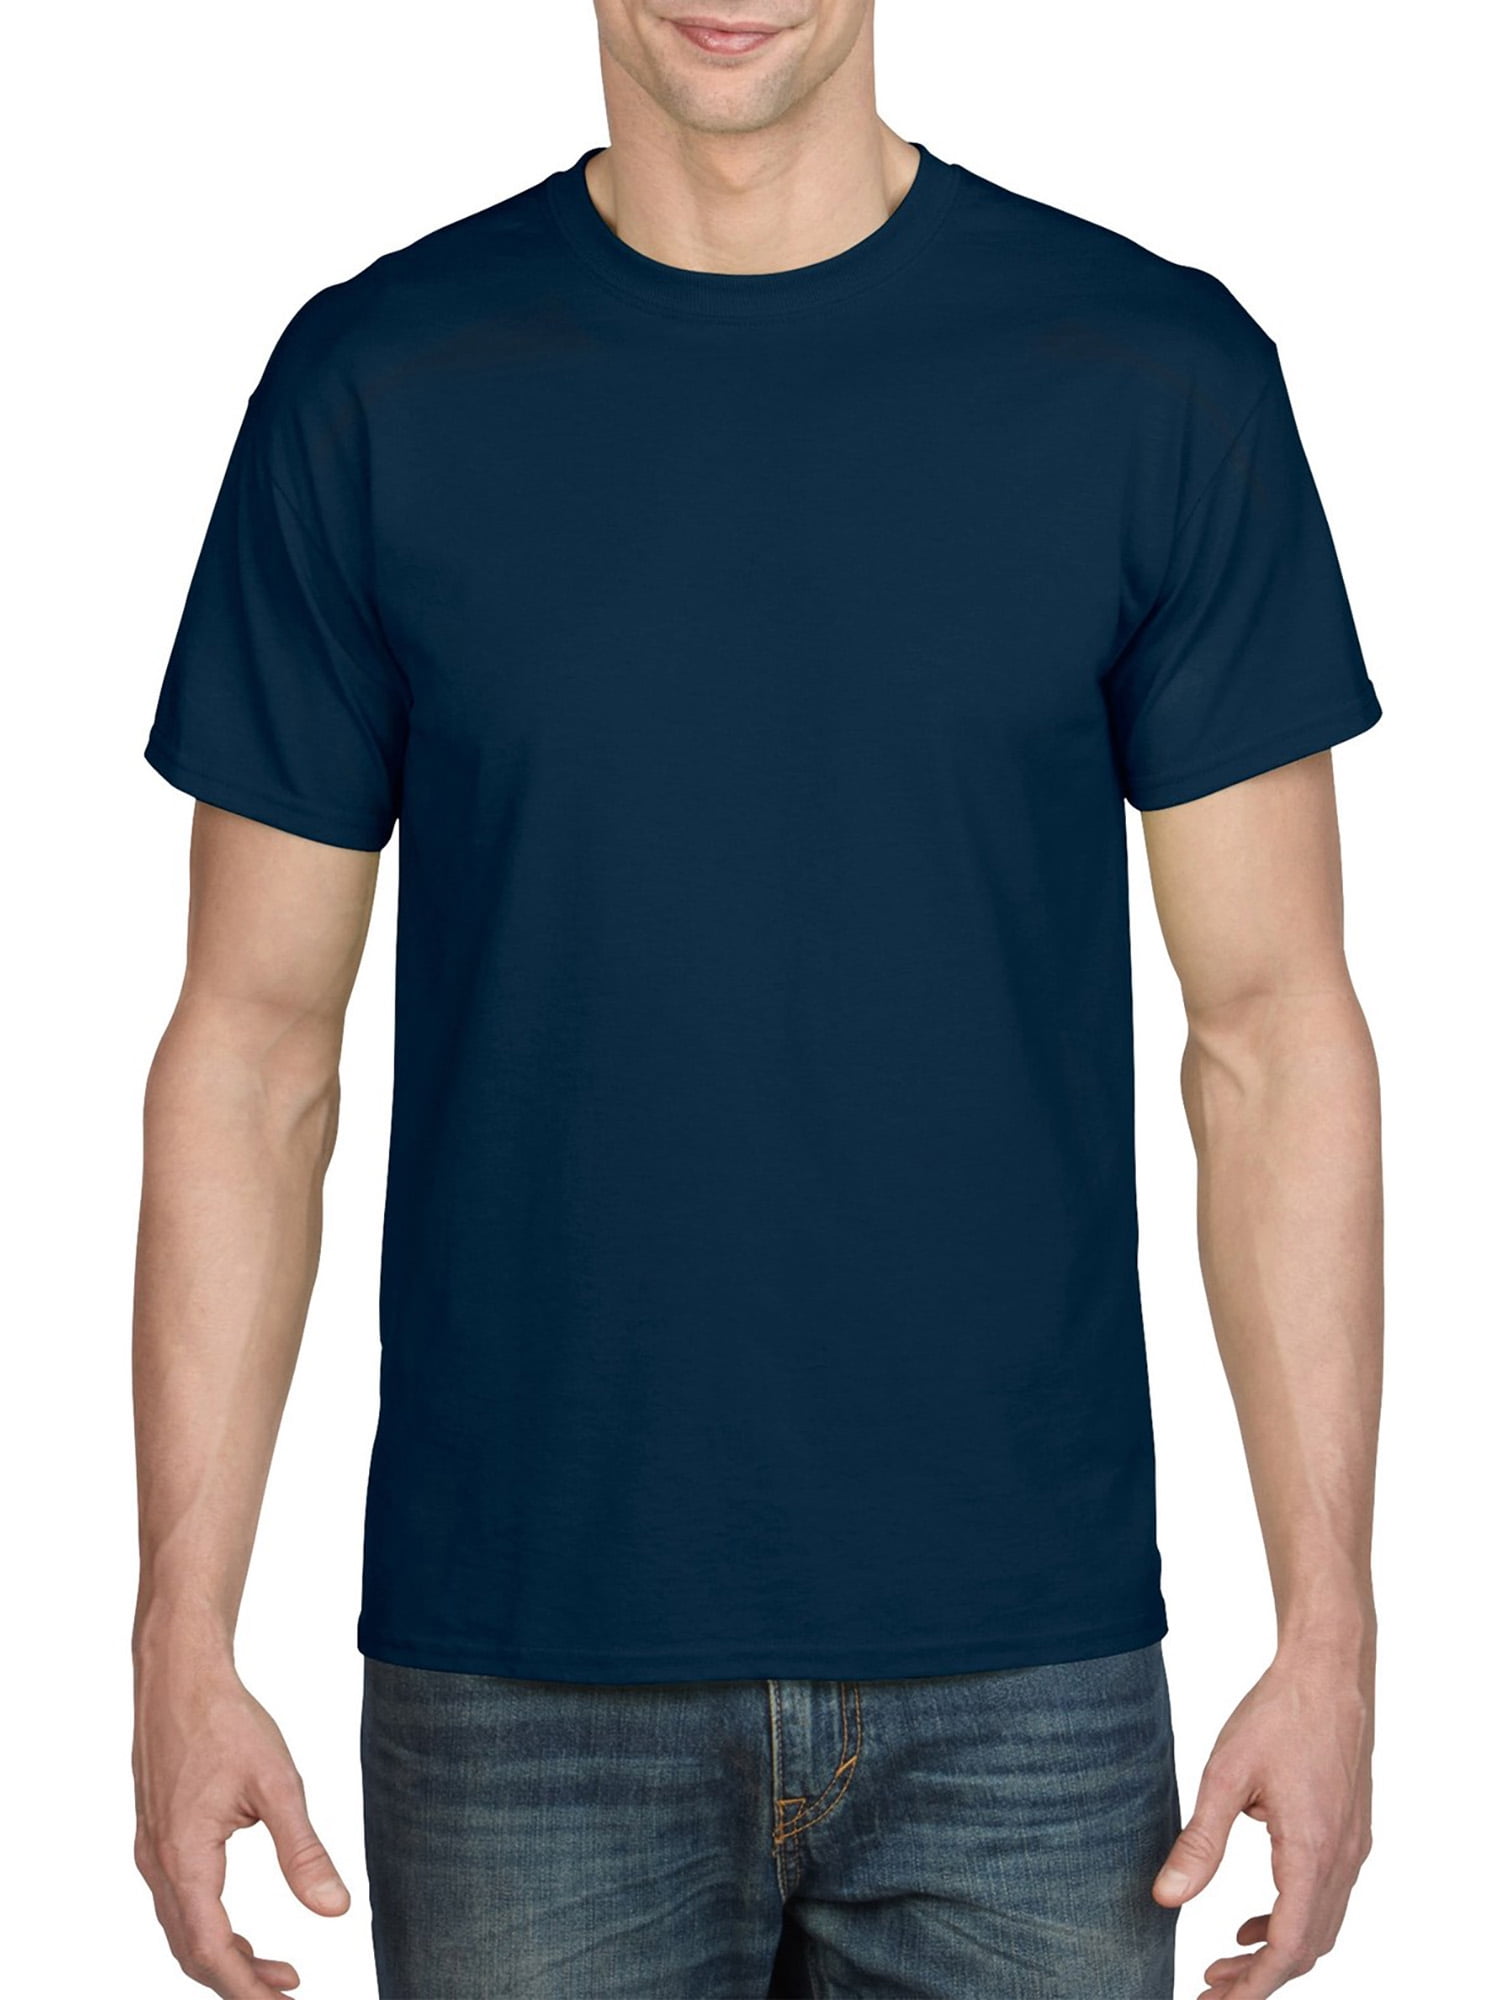 T-shirt 2-Pack by Cascade Sport Big /& Tall Activewear Navy Blue XLT-4XLT sizes